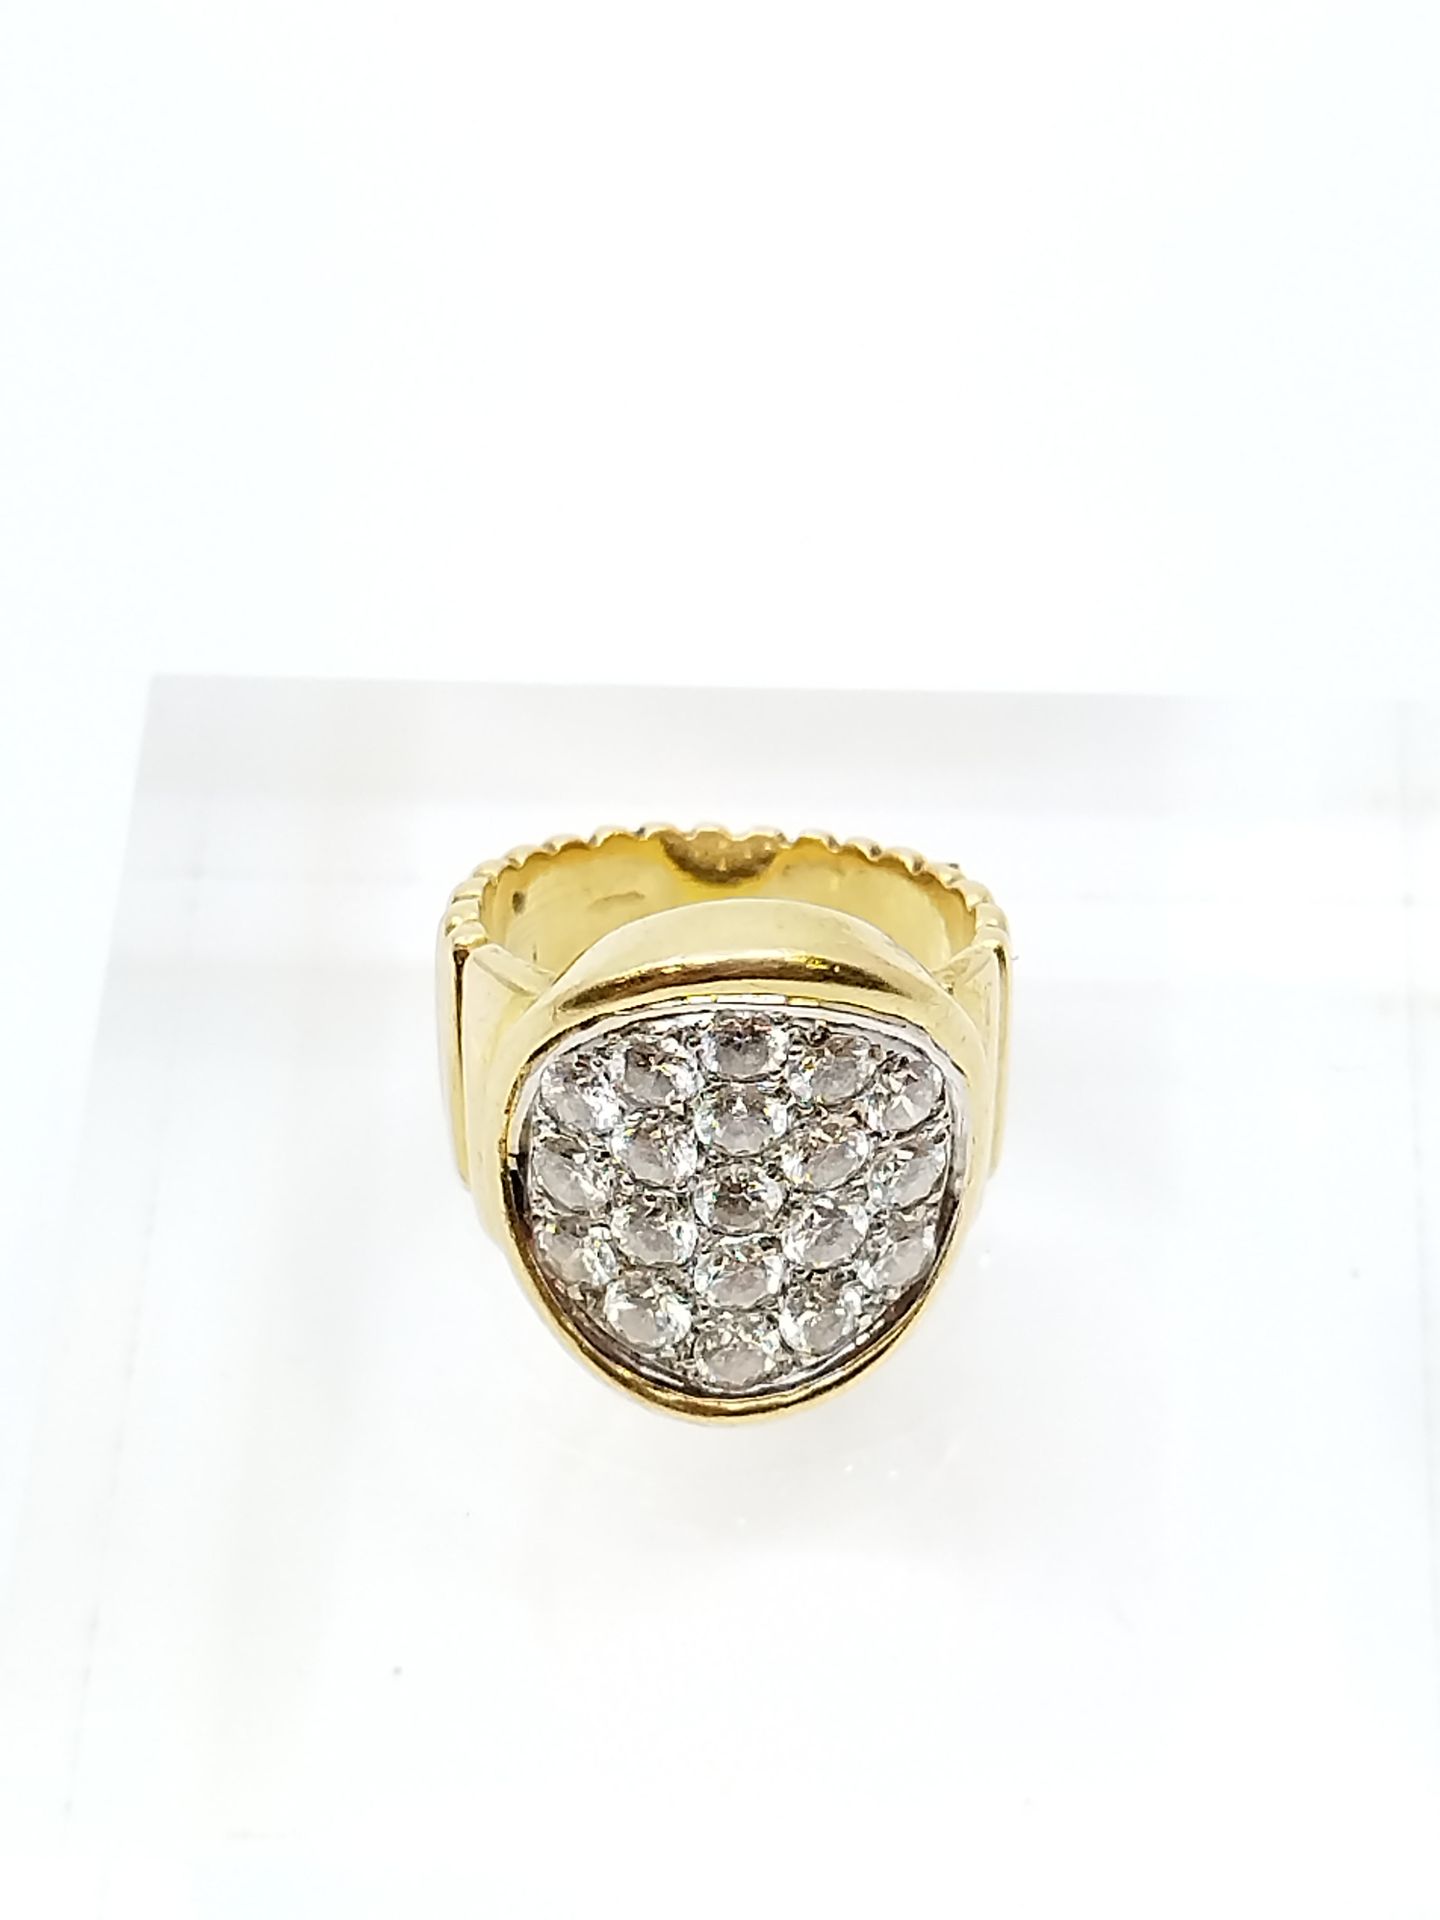 Null 750°黄金戒指，顶部为椭圆形，镶嵌19颗明亮式切割钻石

毛重：14克

TDD 50